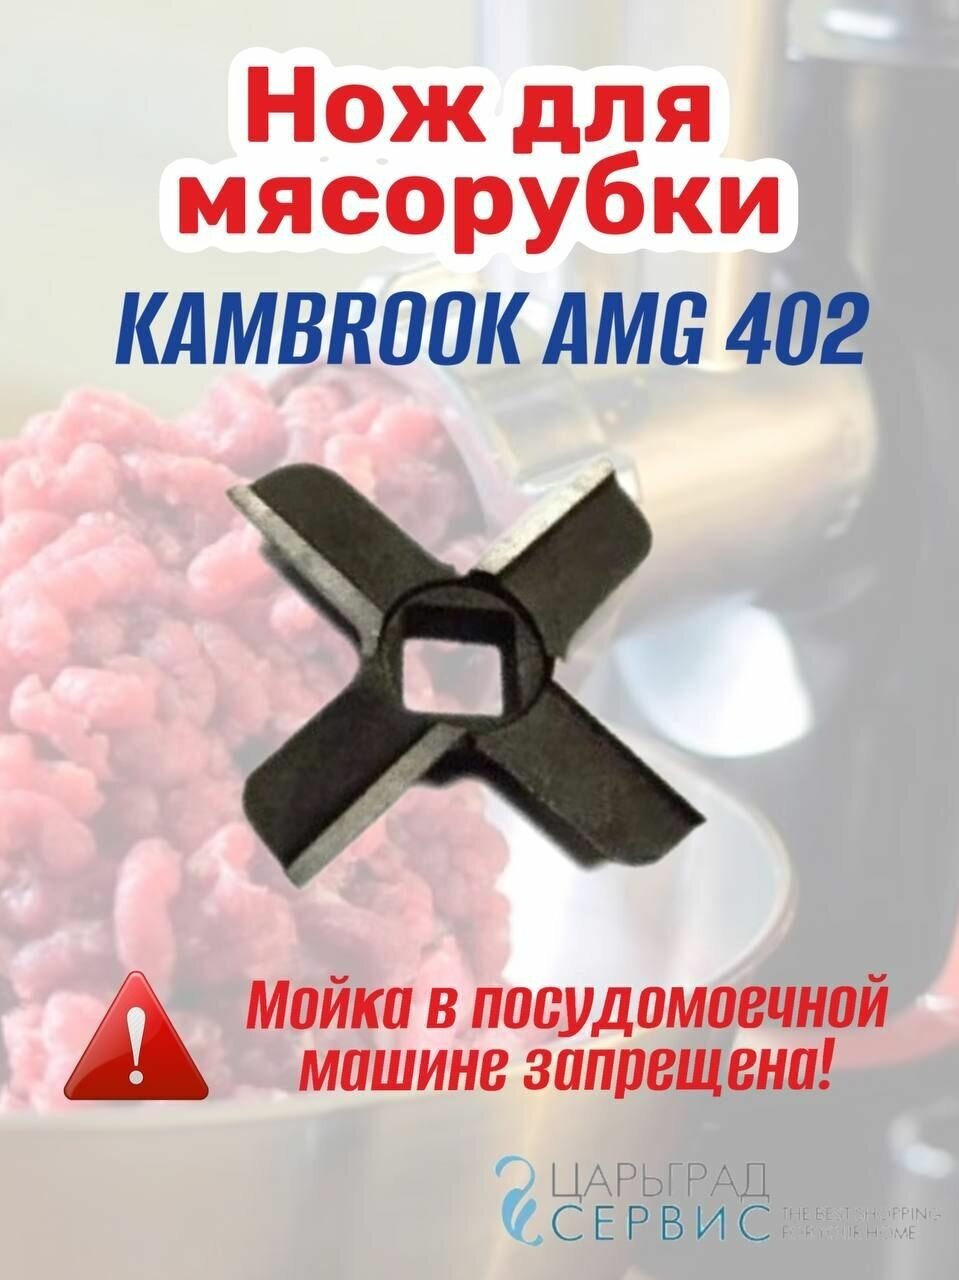 Нож мясорубки KAMBROOK AMG 402